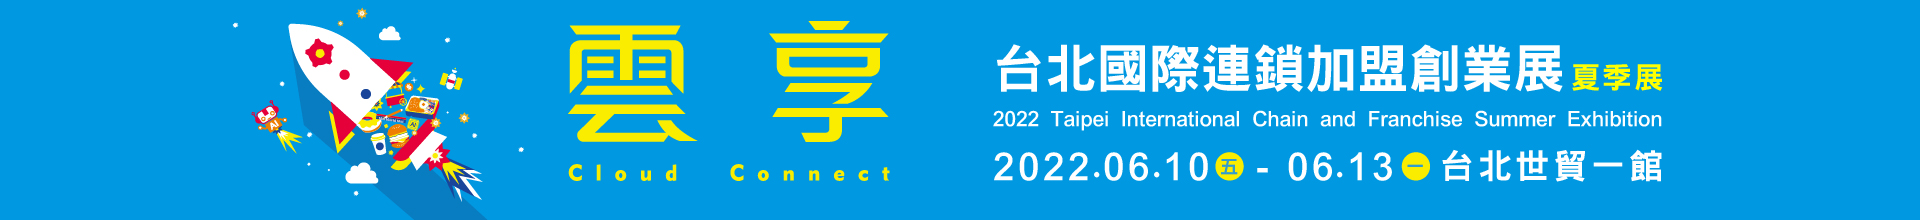 2022台北國際連鎖加盟大展-夏季展